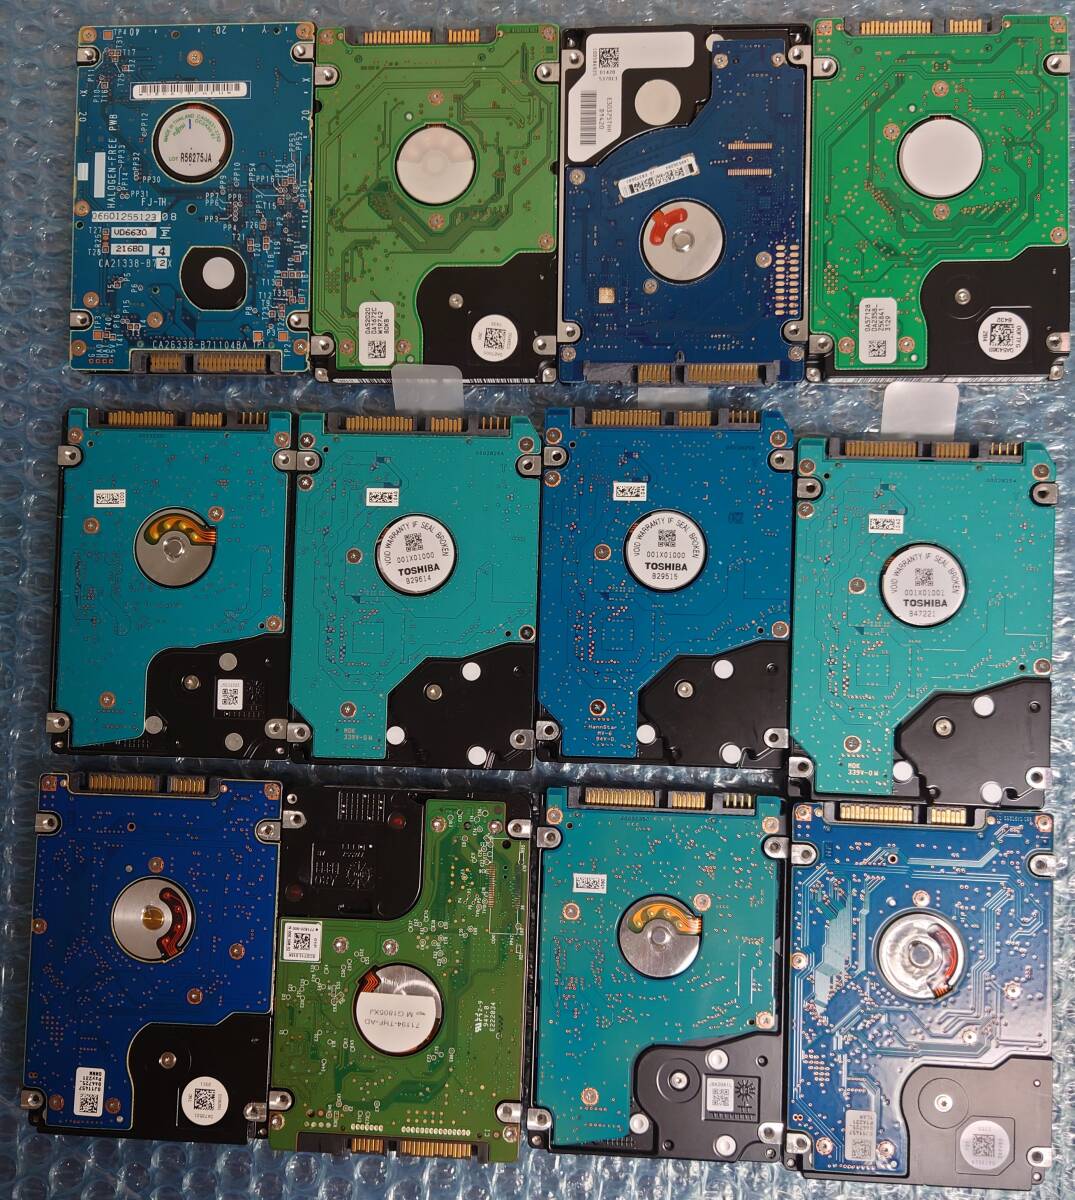 2.5インチハードディスク 12台まとめ ( 500G x4, 320G x4, 250G, 160G, 120G, 40G ) + ケース 2台 ( Salcar ポータブル SATA/SSDケース )の画像3